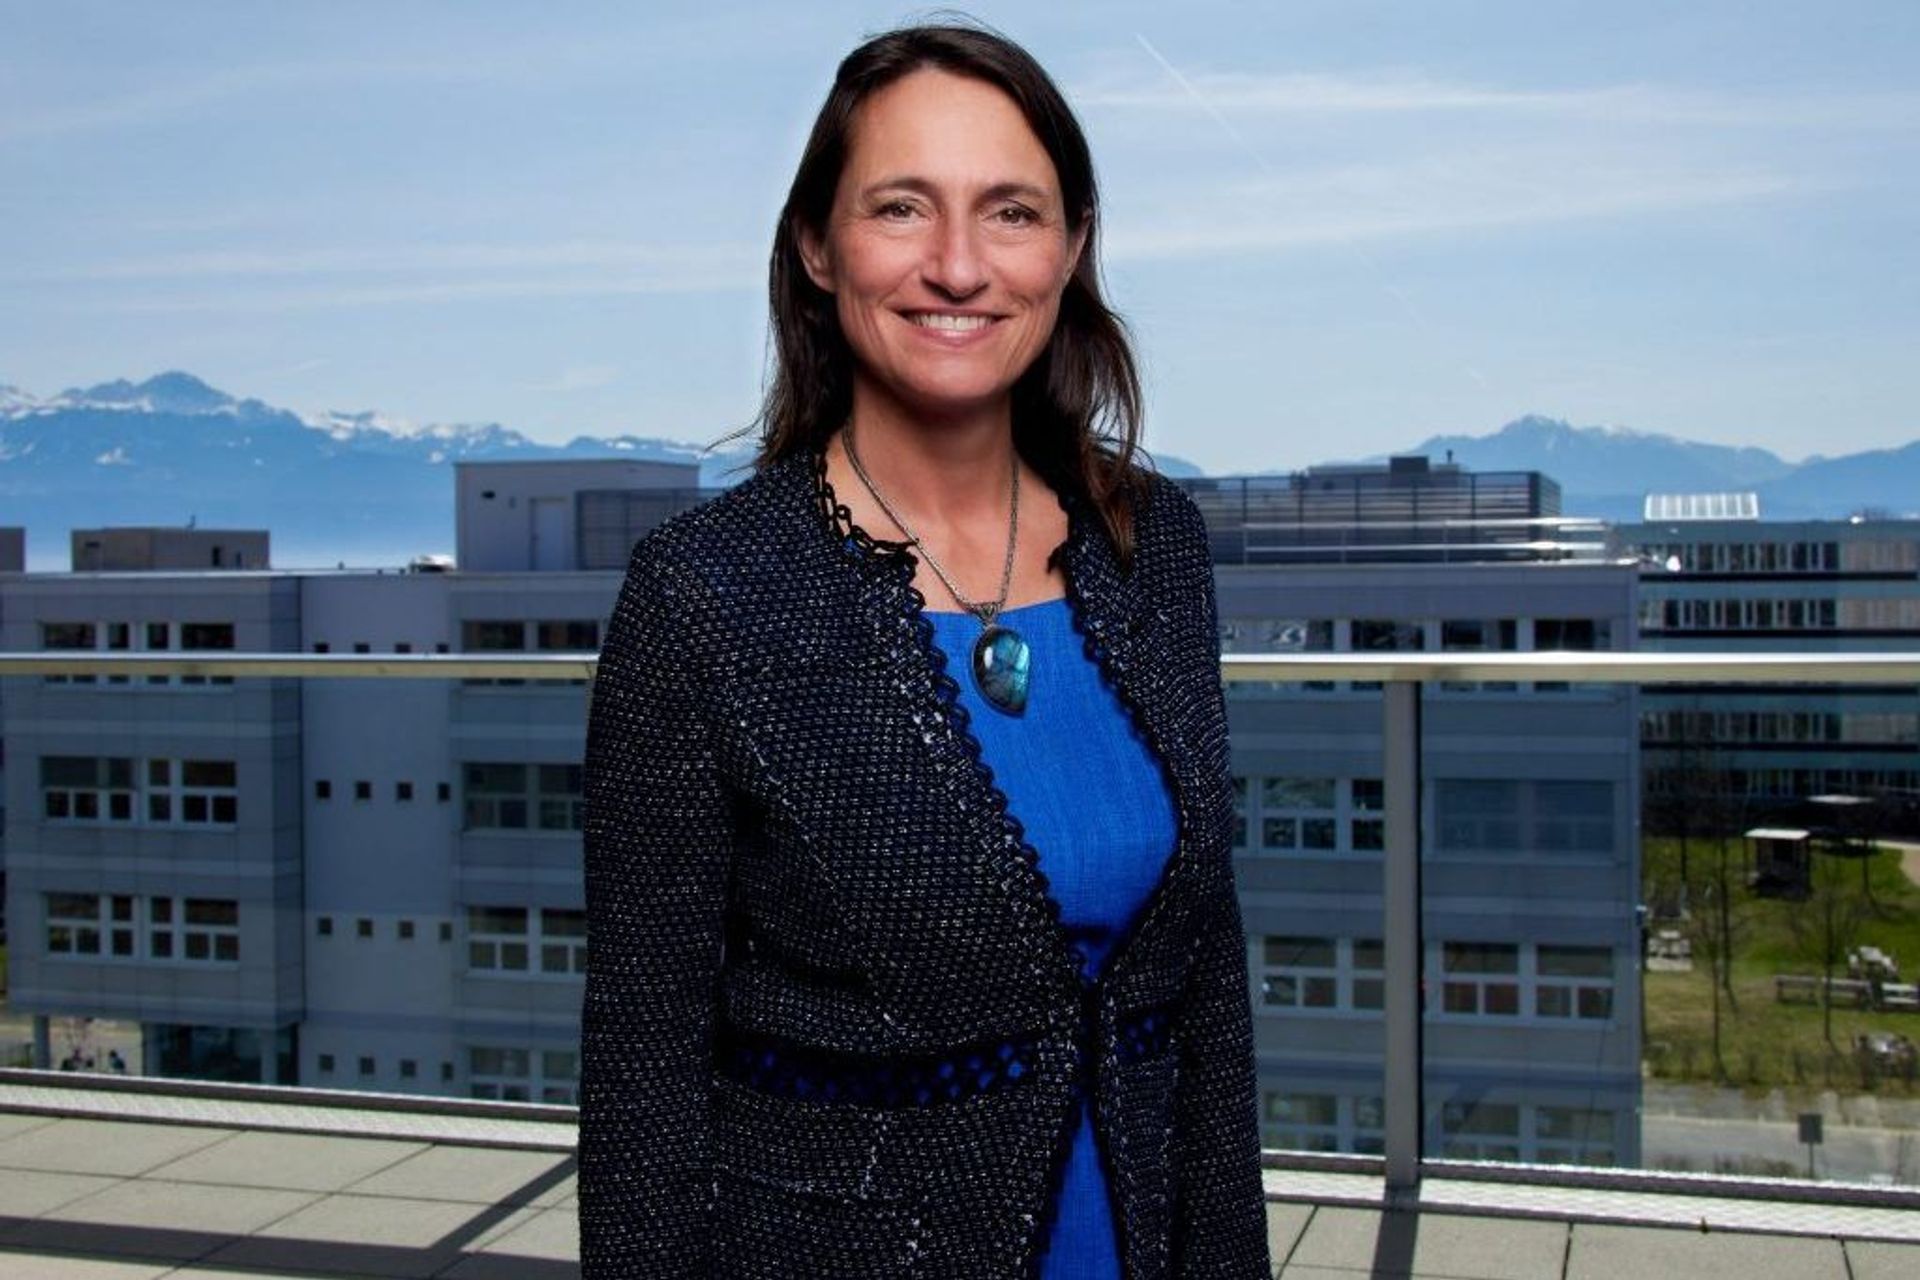 Ursula Oesterle è la vicepresidente del Politecnico Federale di Losanna (EPFL) per l'innovazione